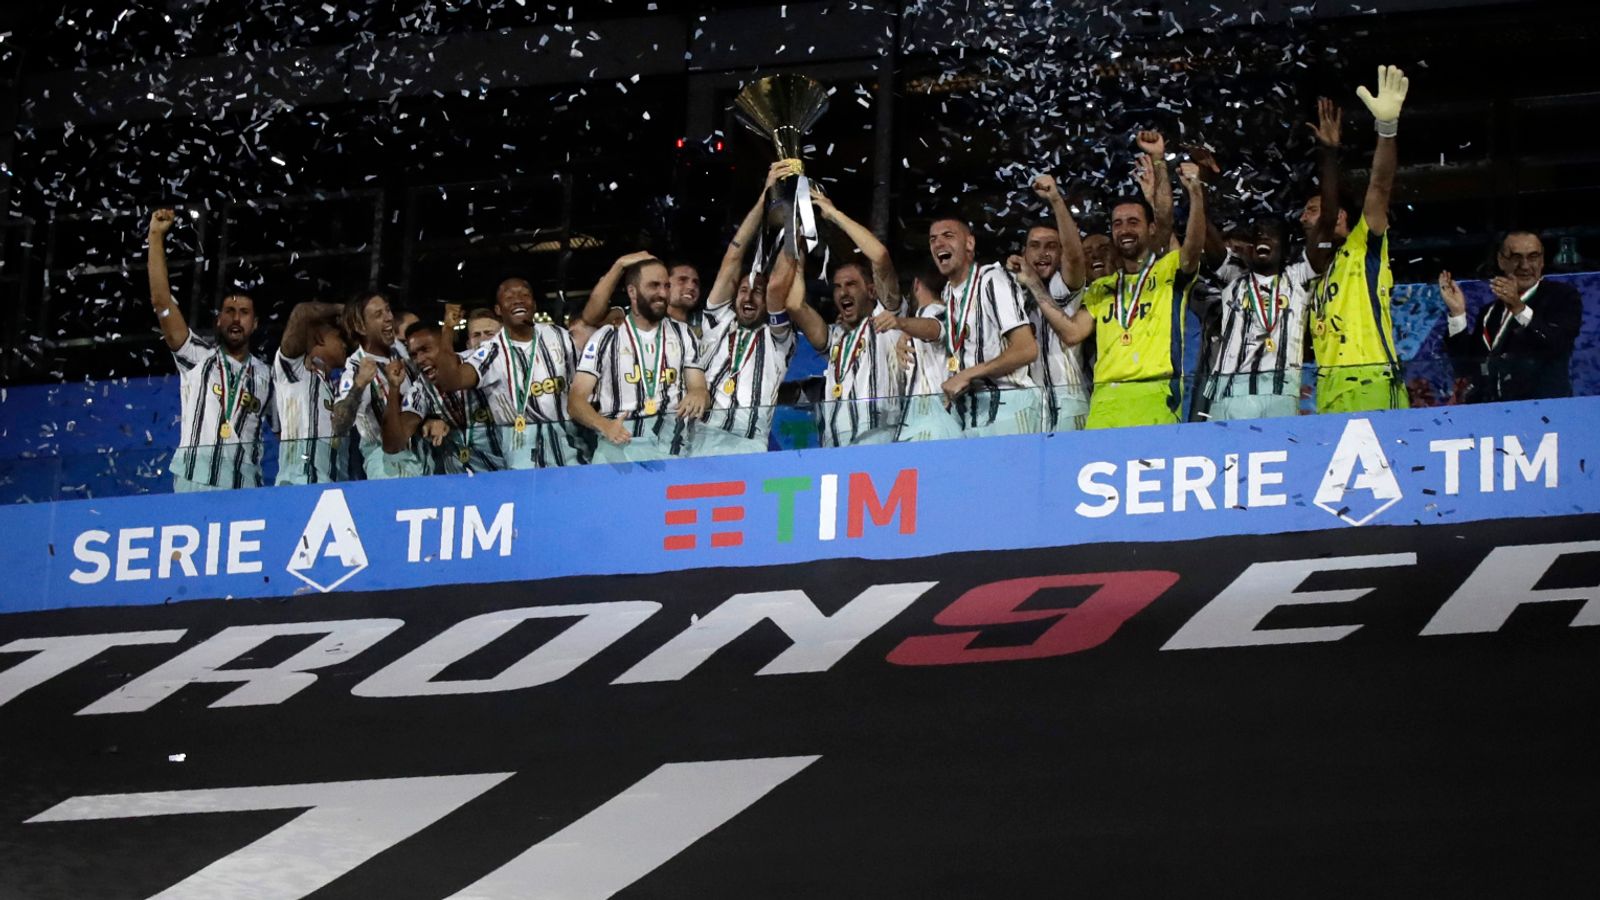 Europa League: la Juventus rischia l’espulsione dal campionato italiano se continuano i piani separatisti – Presidente Federcalcio italiana |  notizie di calcio